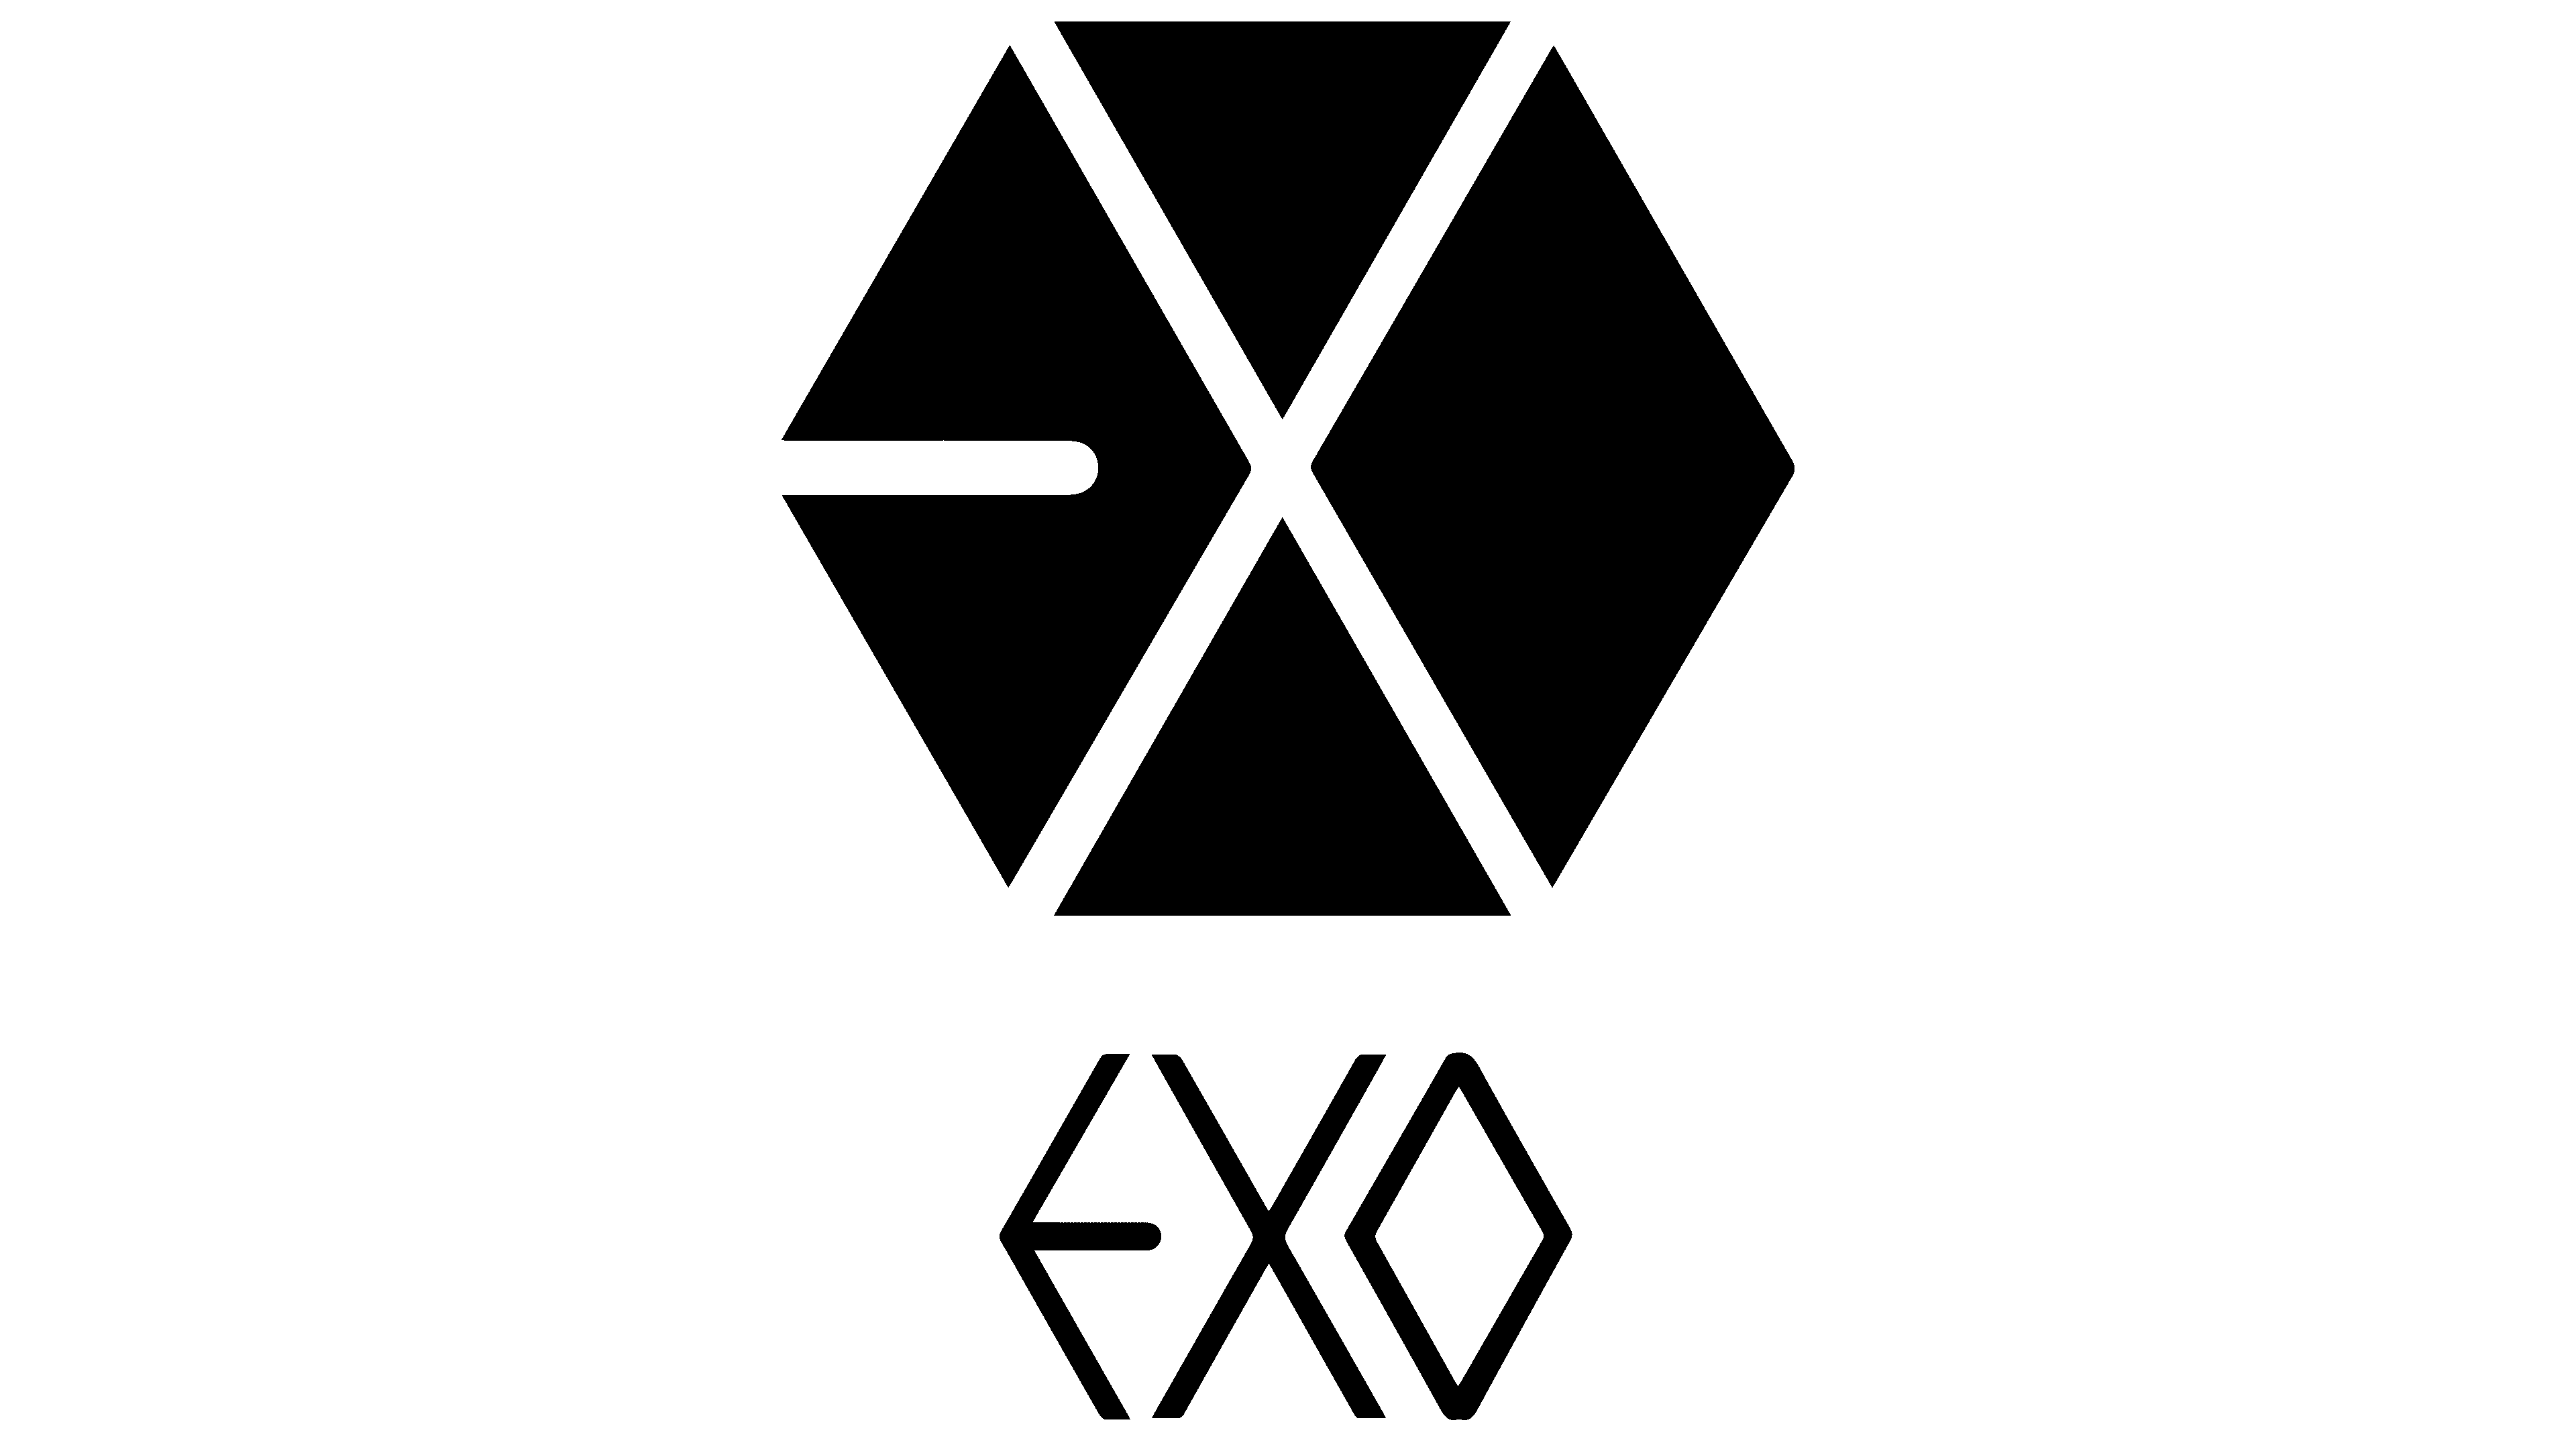 EXO Logo Wallpapers on WallpaperDog